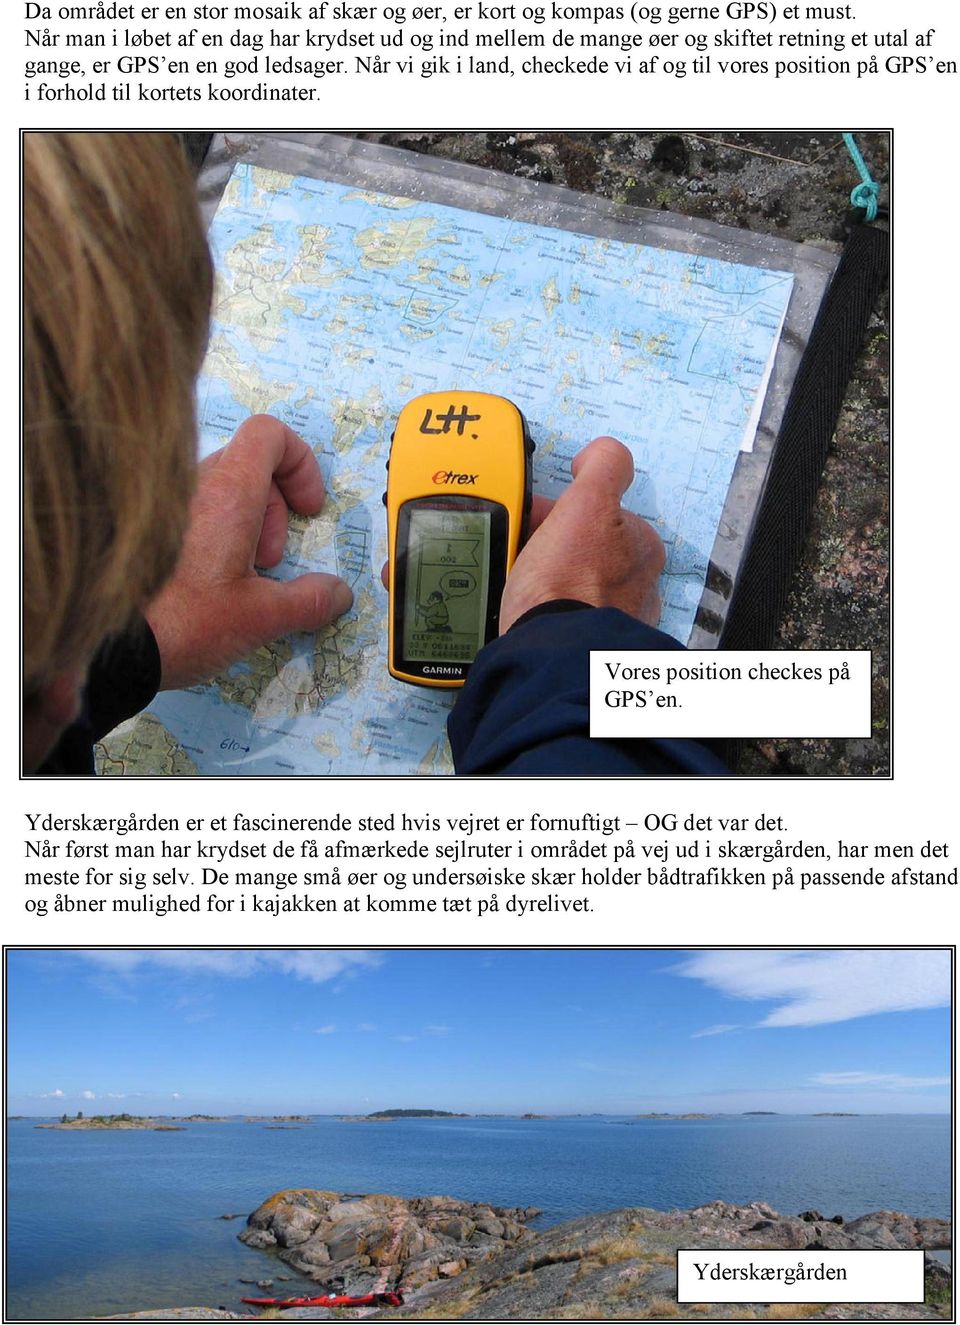 Når vi gik i land, checkede vi af og til vores position på GPS en i forhold til kortets koordinater. Vores position checkes på GPS en.